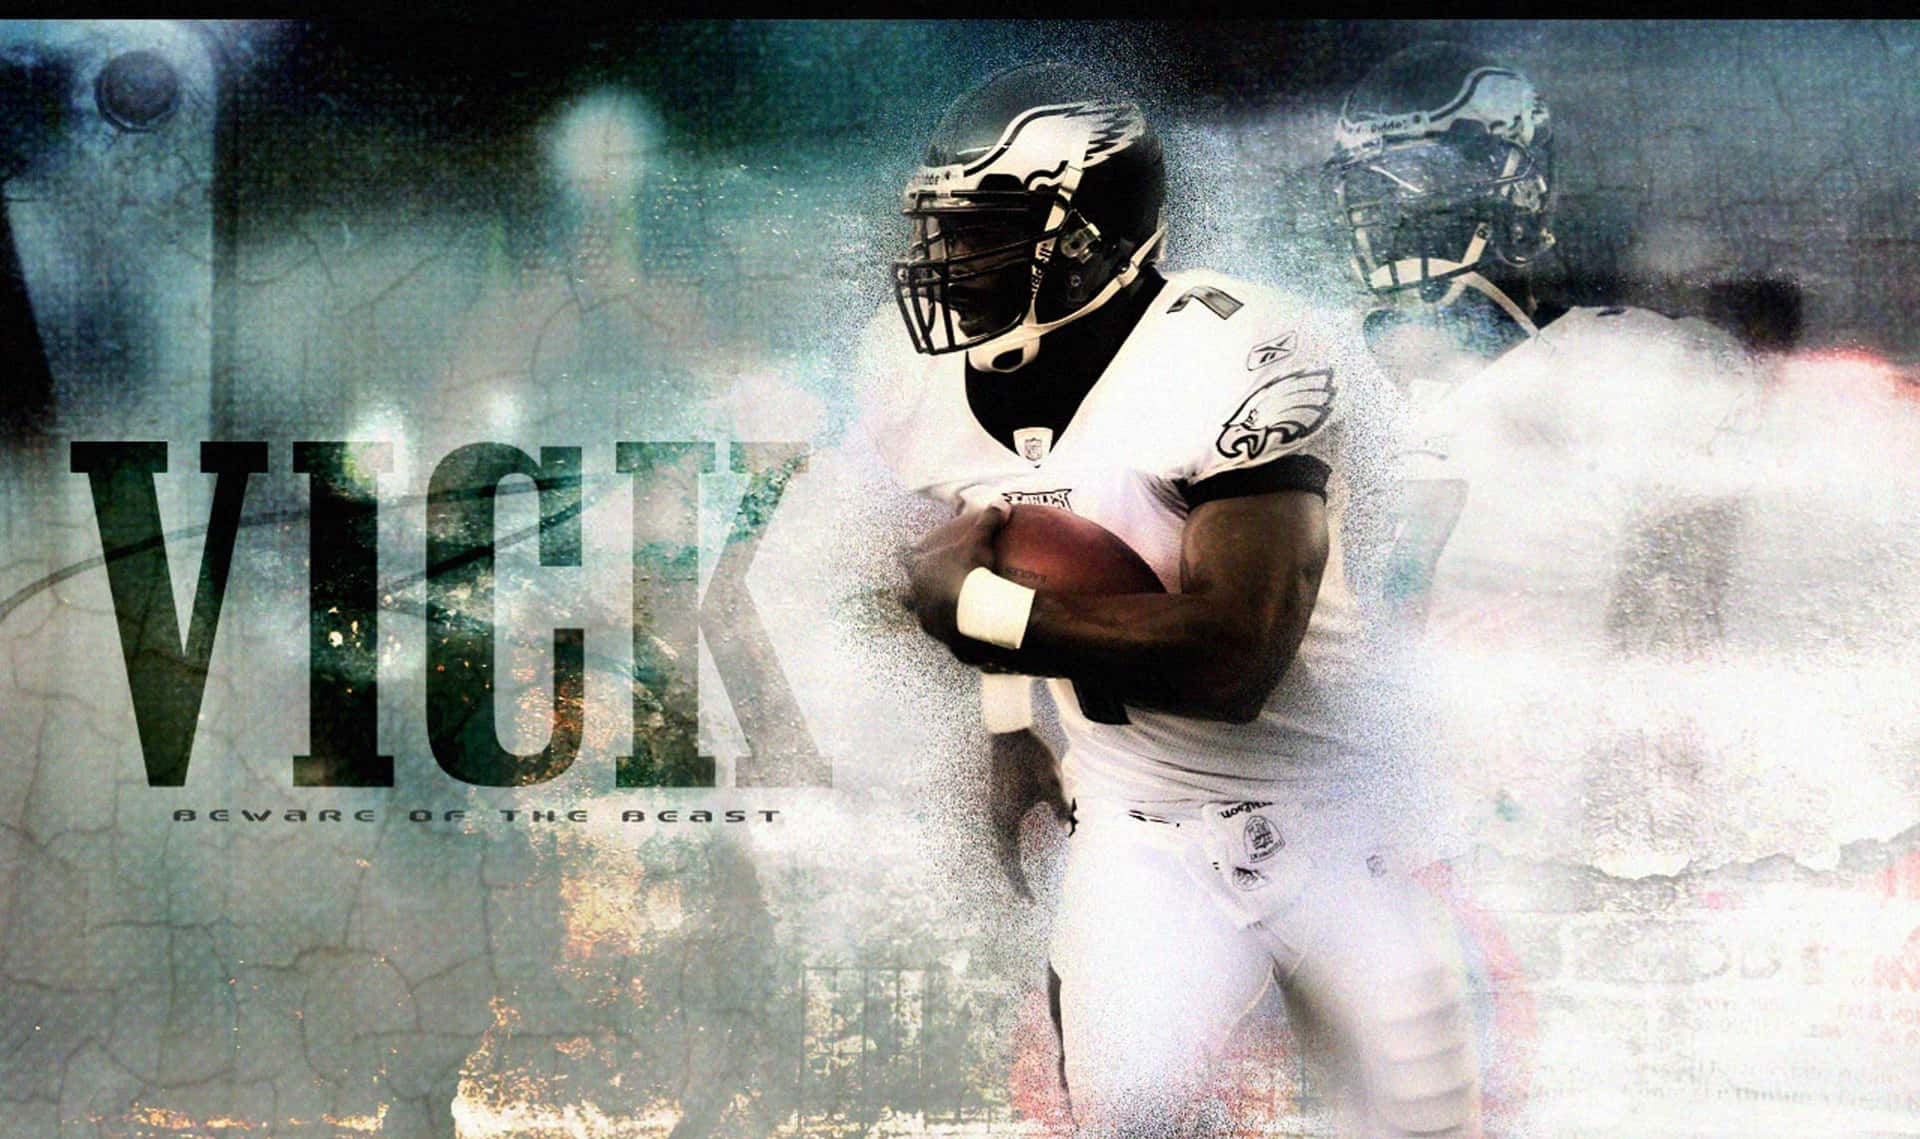 Tidligere NFL Quarterback Michael Vick har lavet denne baggrundsbillede. Wallpaper